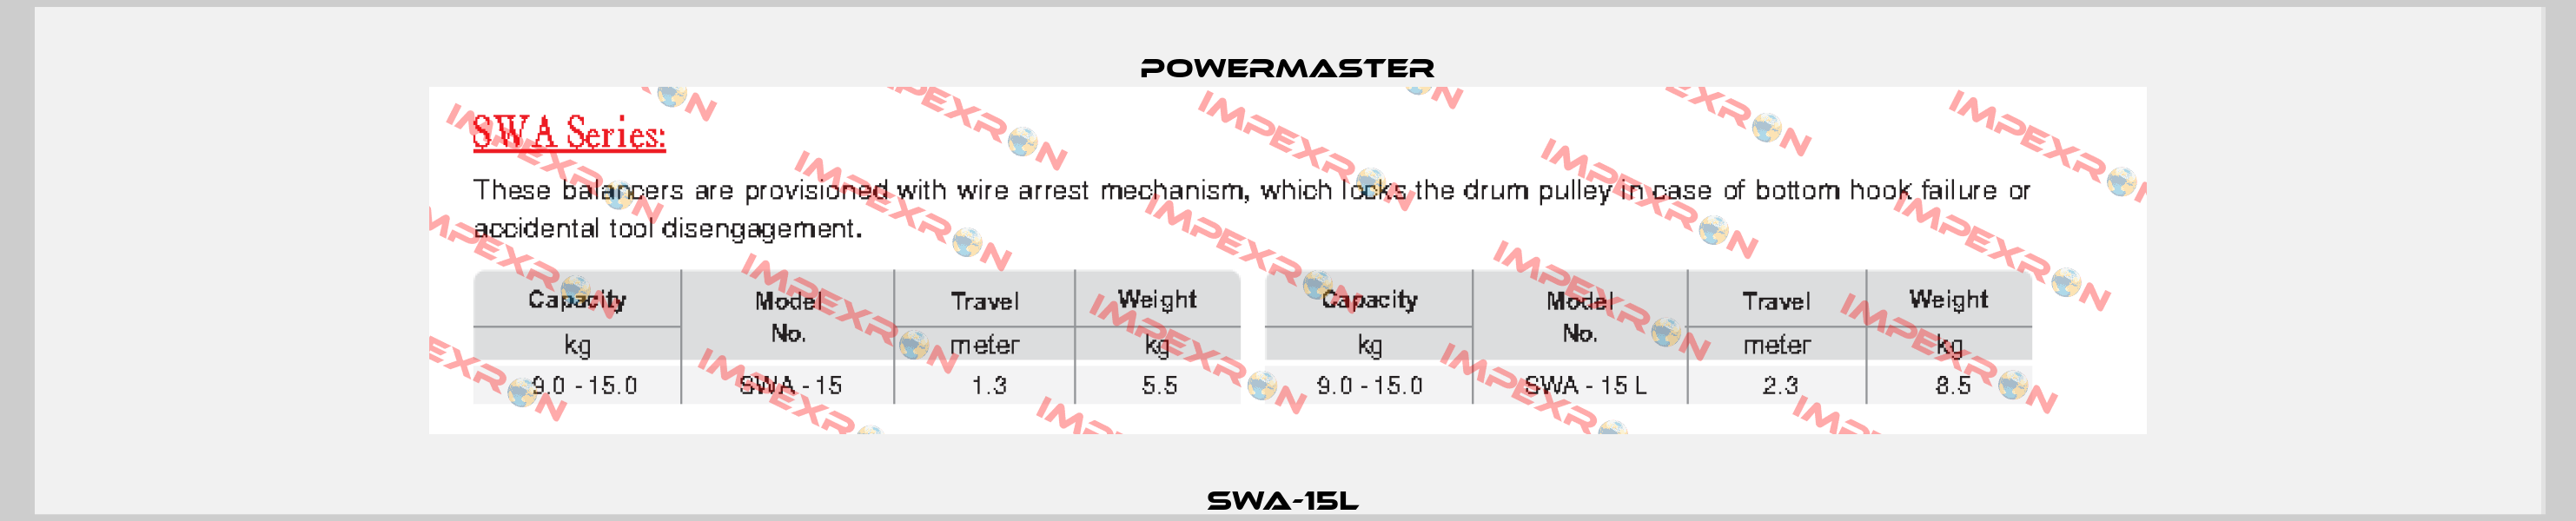 SWA-15L  POWERMASTER